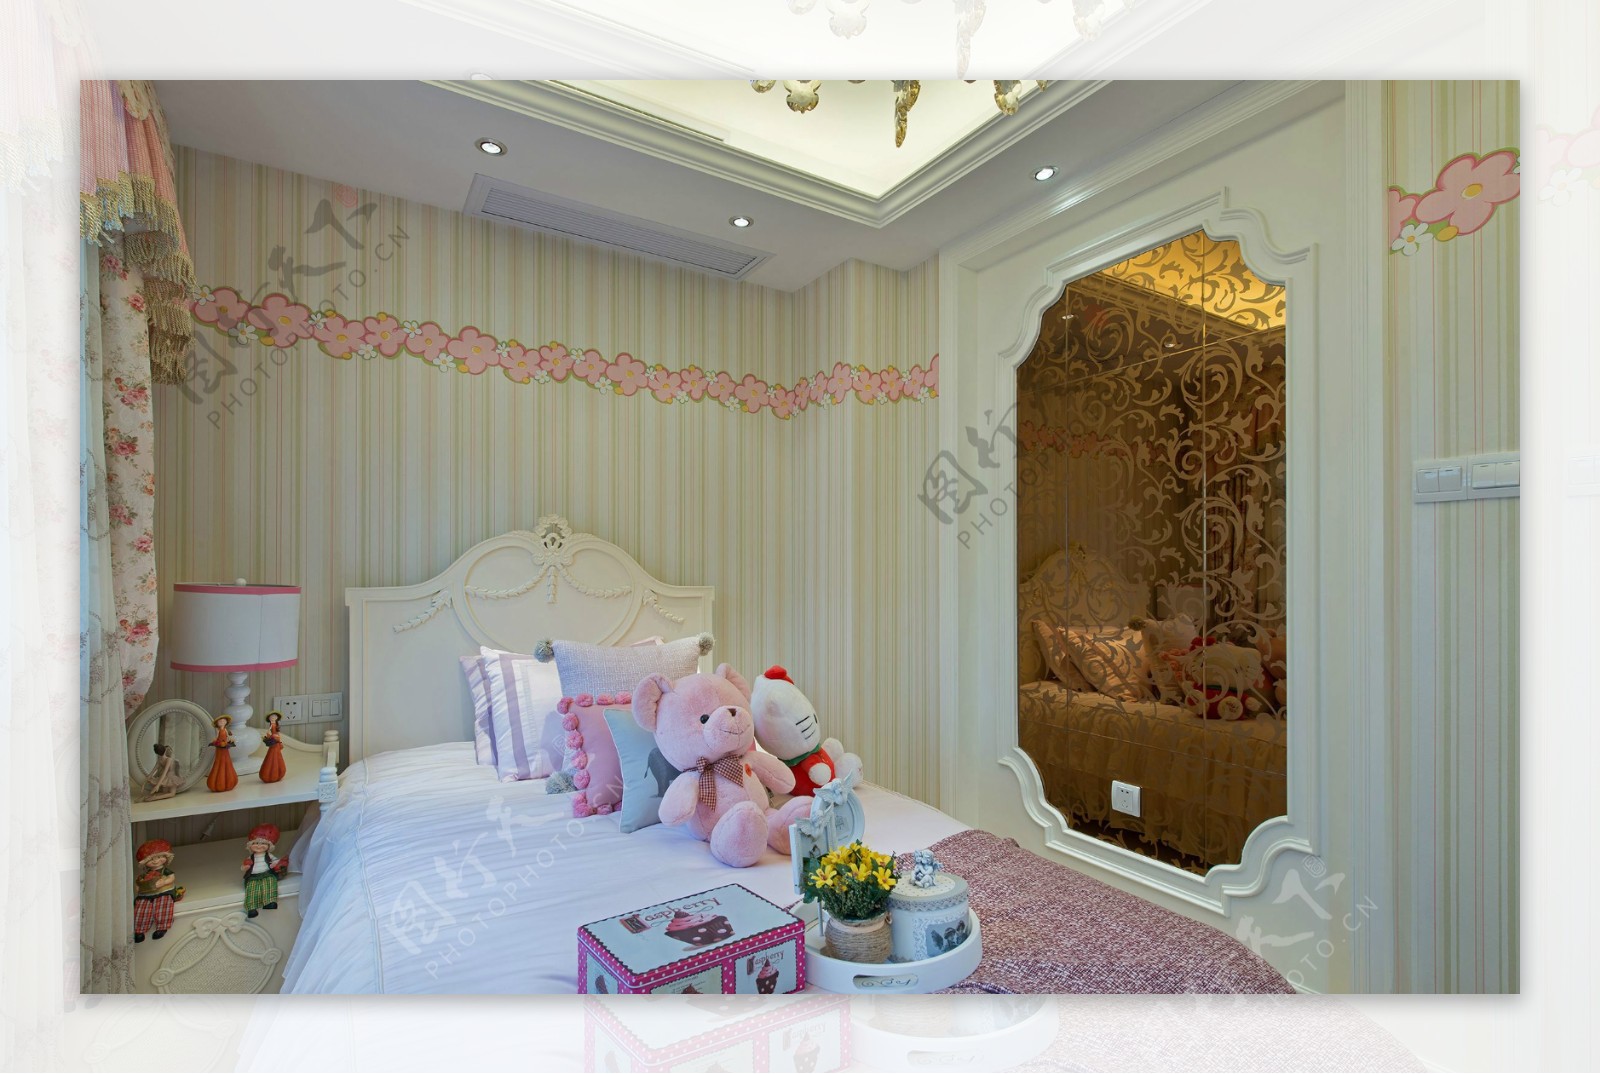 温馨清新粉白背景墙卧室室内装修效果图